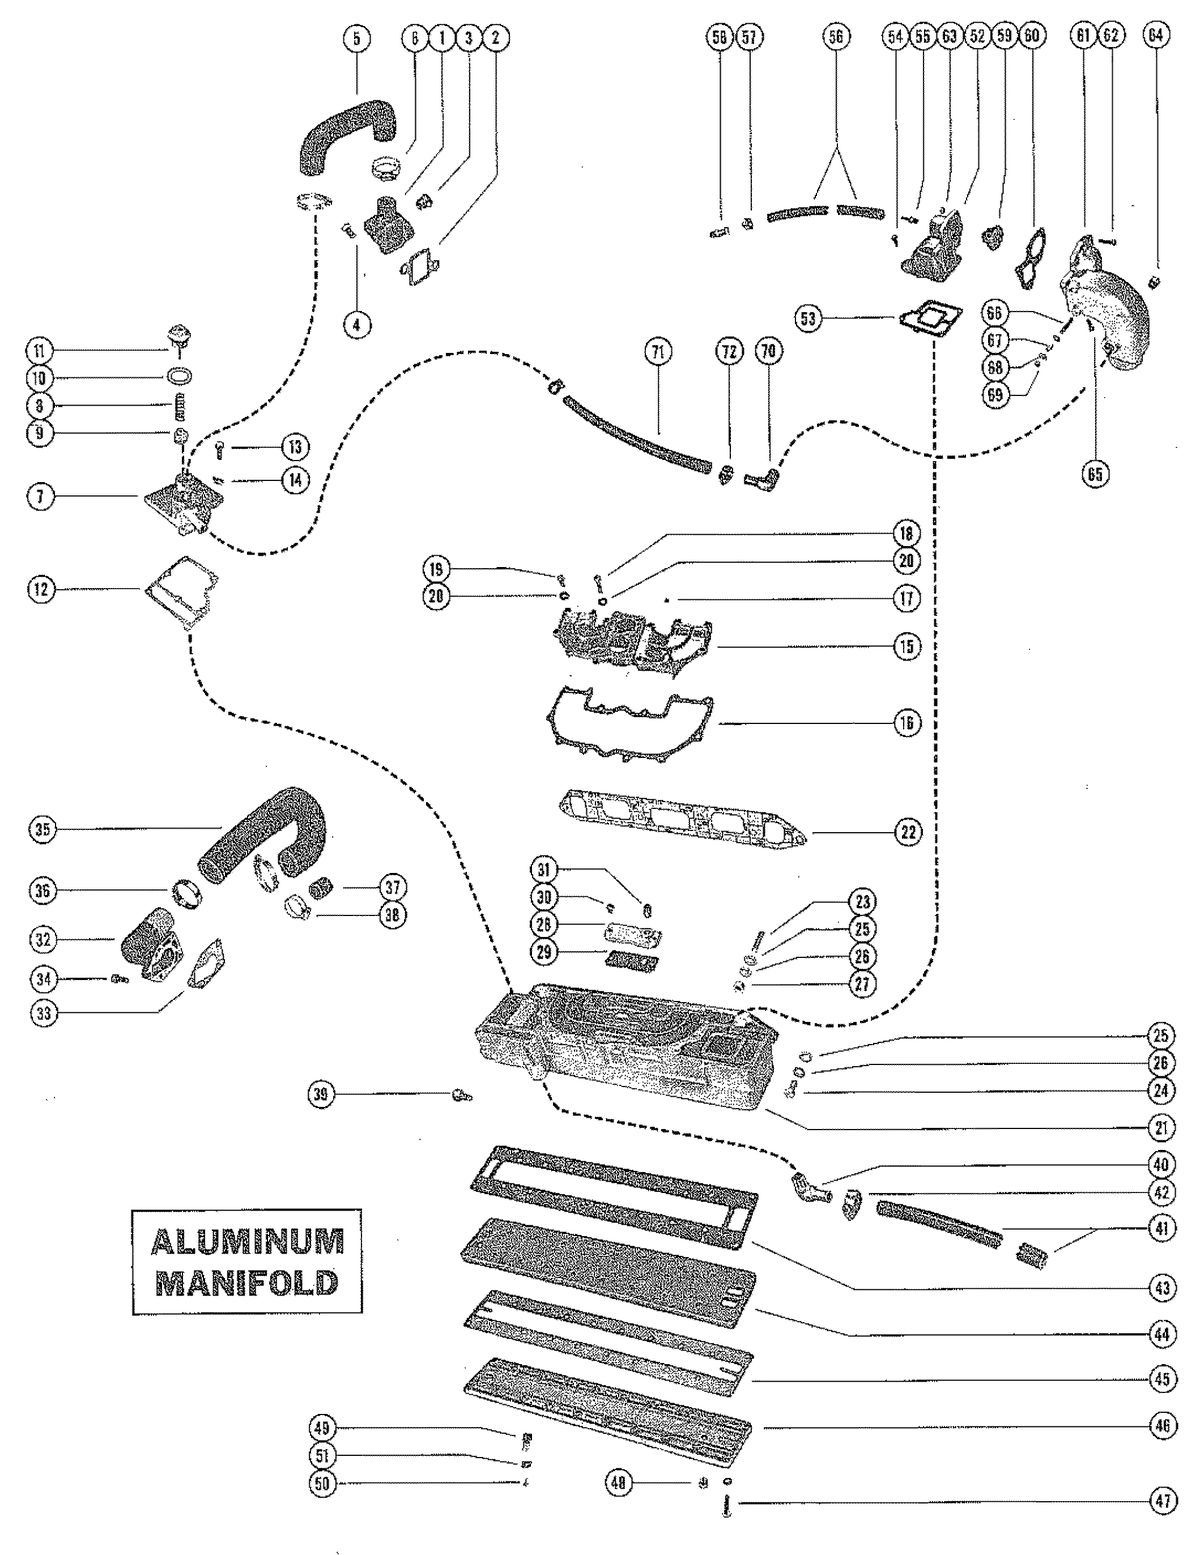 MERCRUISER 120 ENGINE EXHAUST MANIFOLD ASSEM (ALUMINUM)(SERIAL # 1666601-1725592)